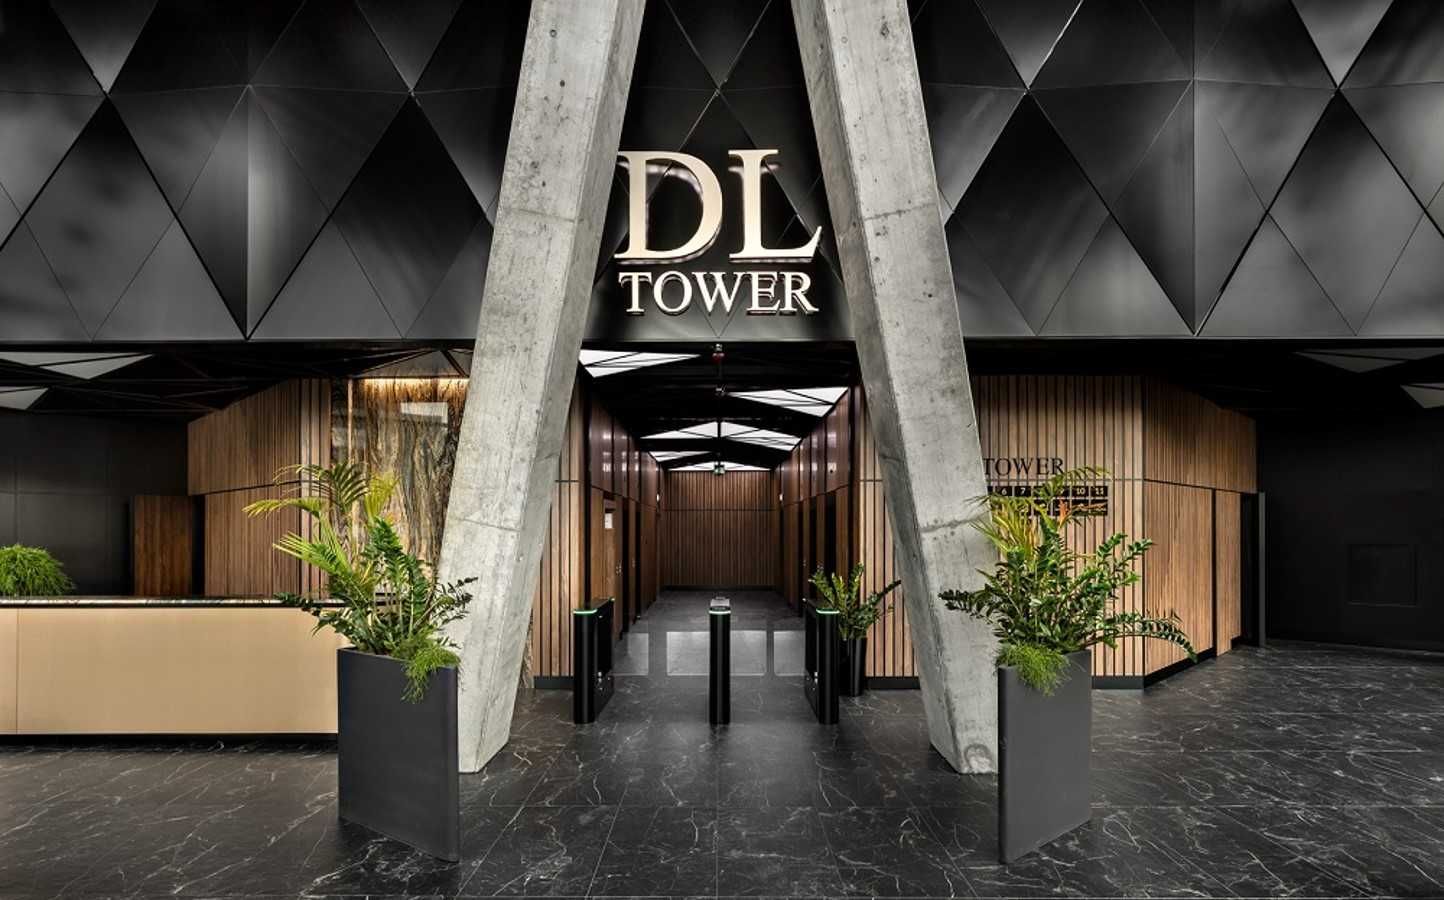 Powierzchnia biurowa do wynajęcia w DL Tower w Katowicach!